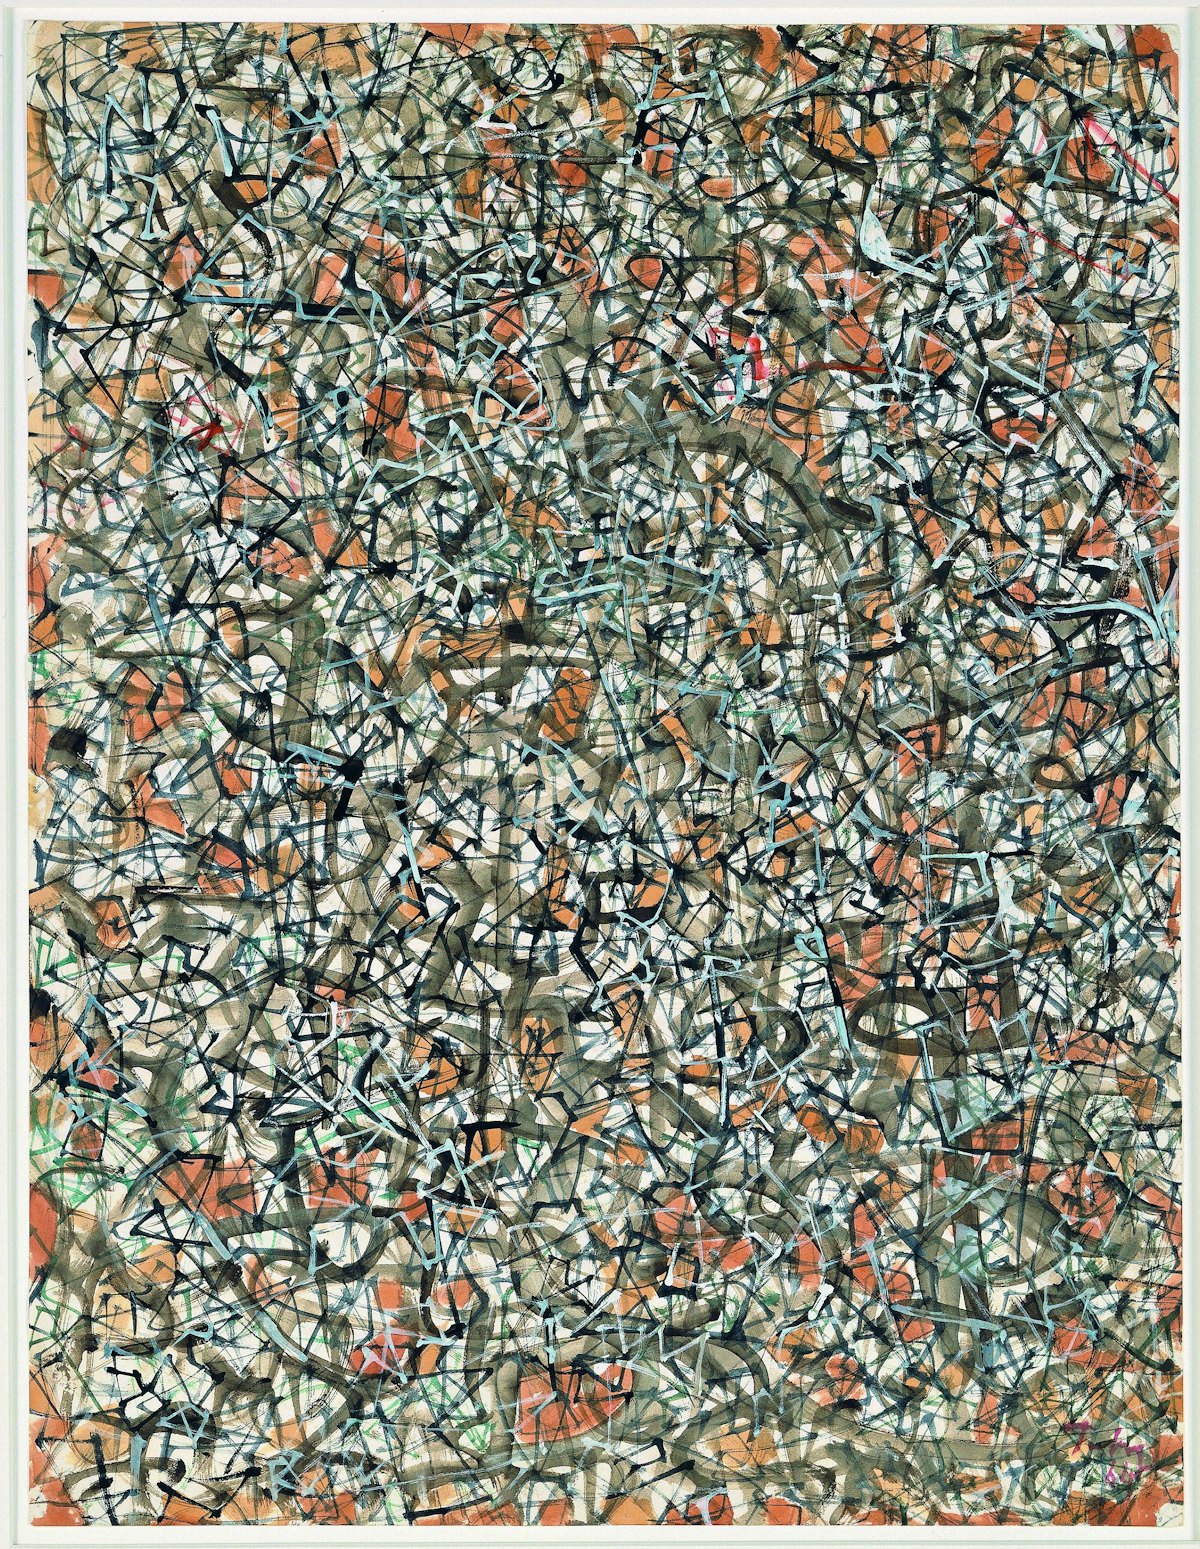 Mark Tobey
Cammino della storia(Advance of history), 1964
Guazzo e acquerello su carta
62.2 x 50.1 cm
Peggy Guggenheim Collection, Venice